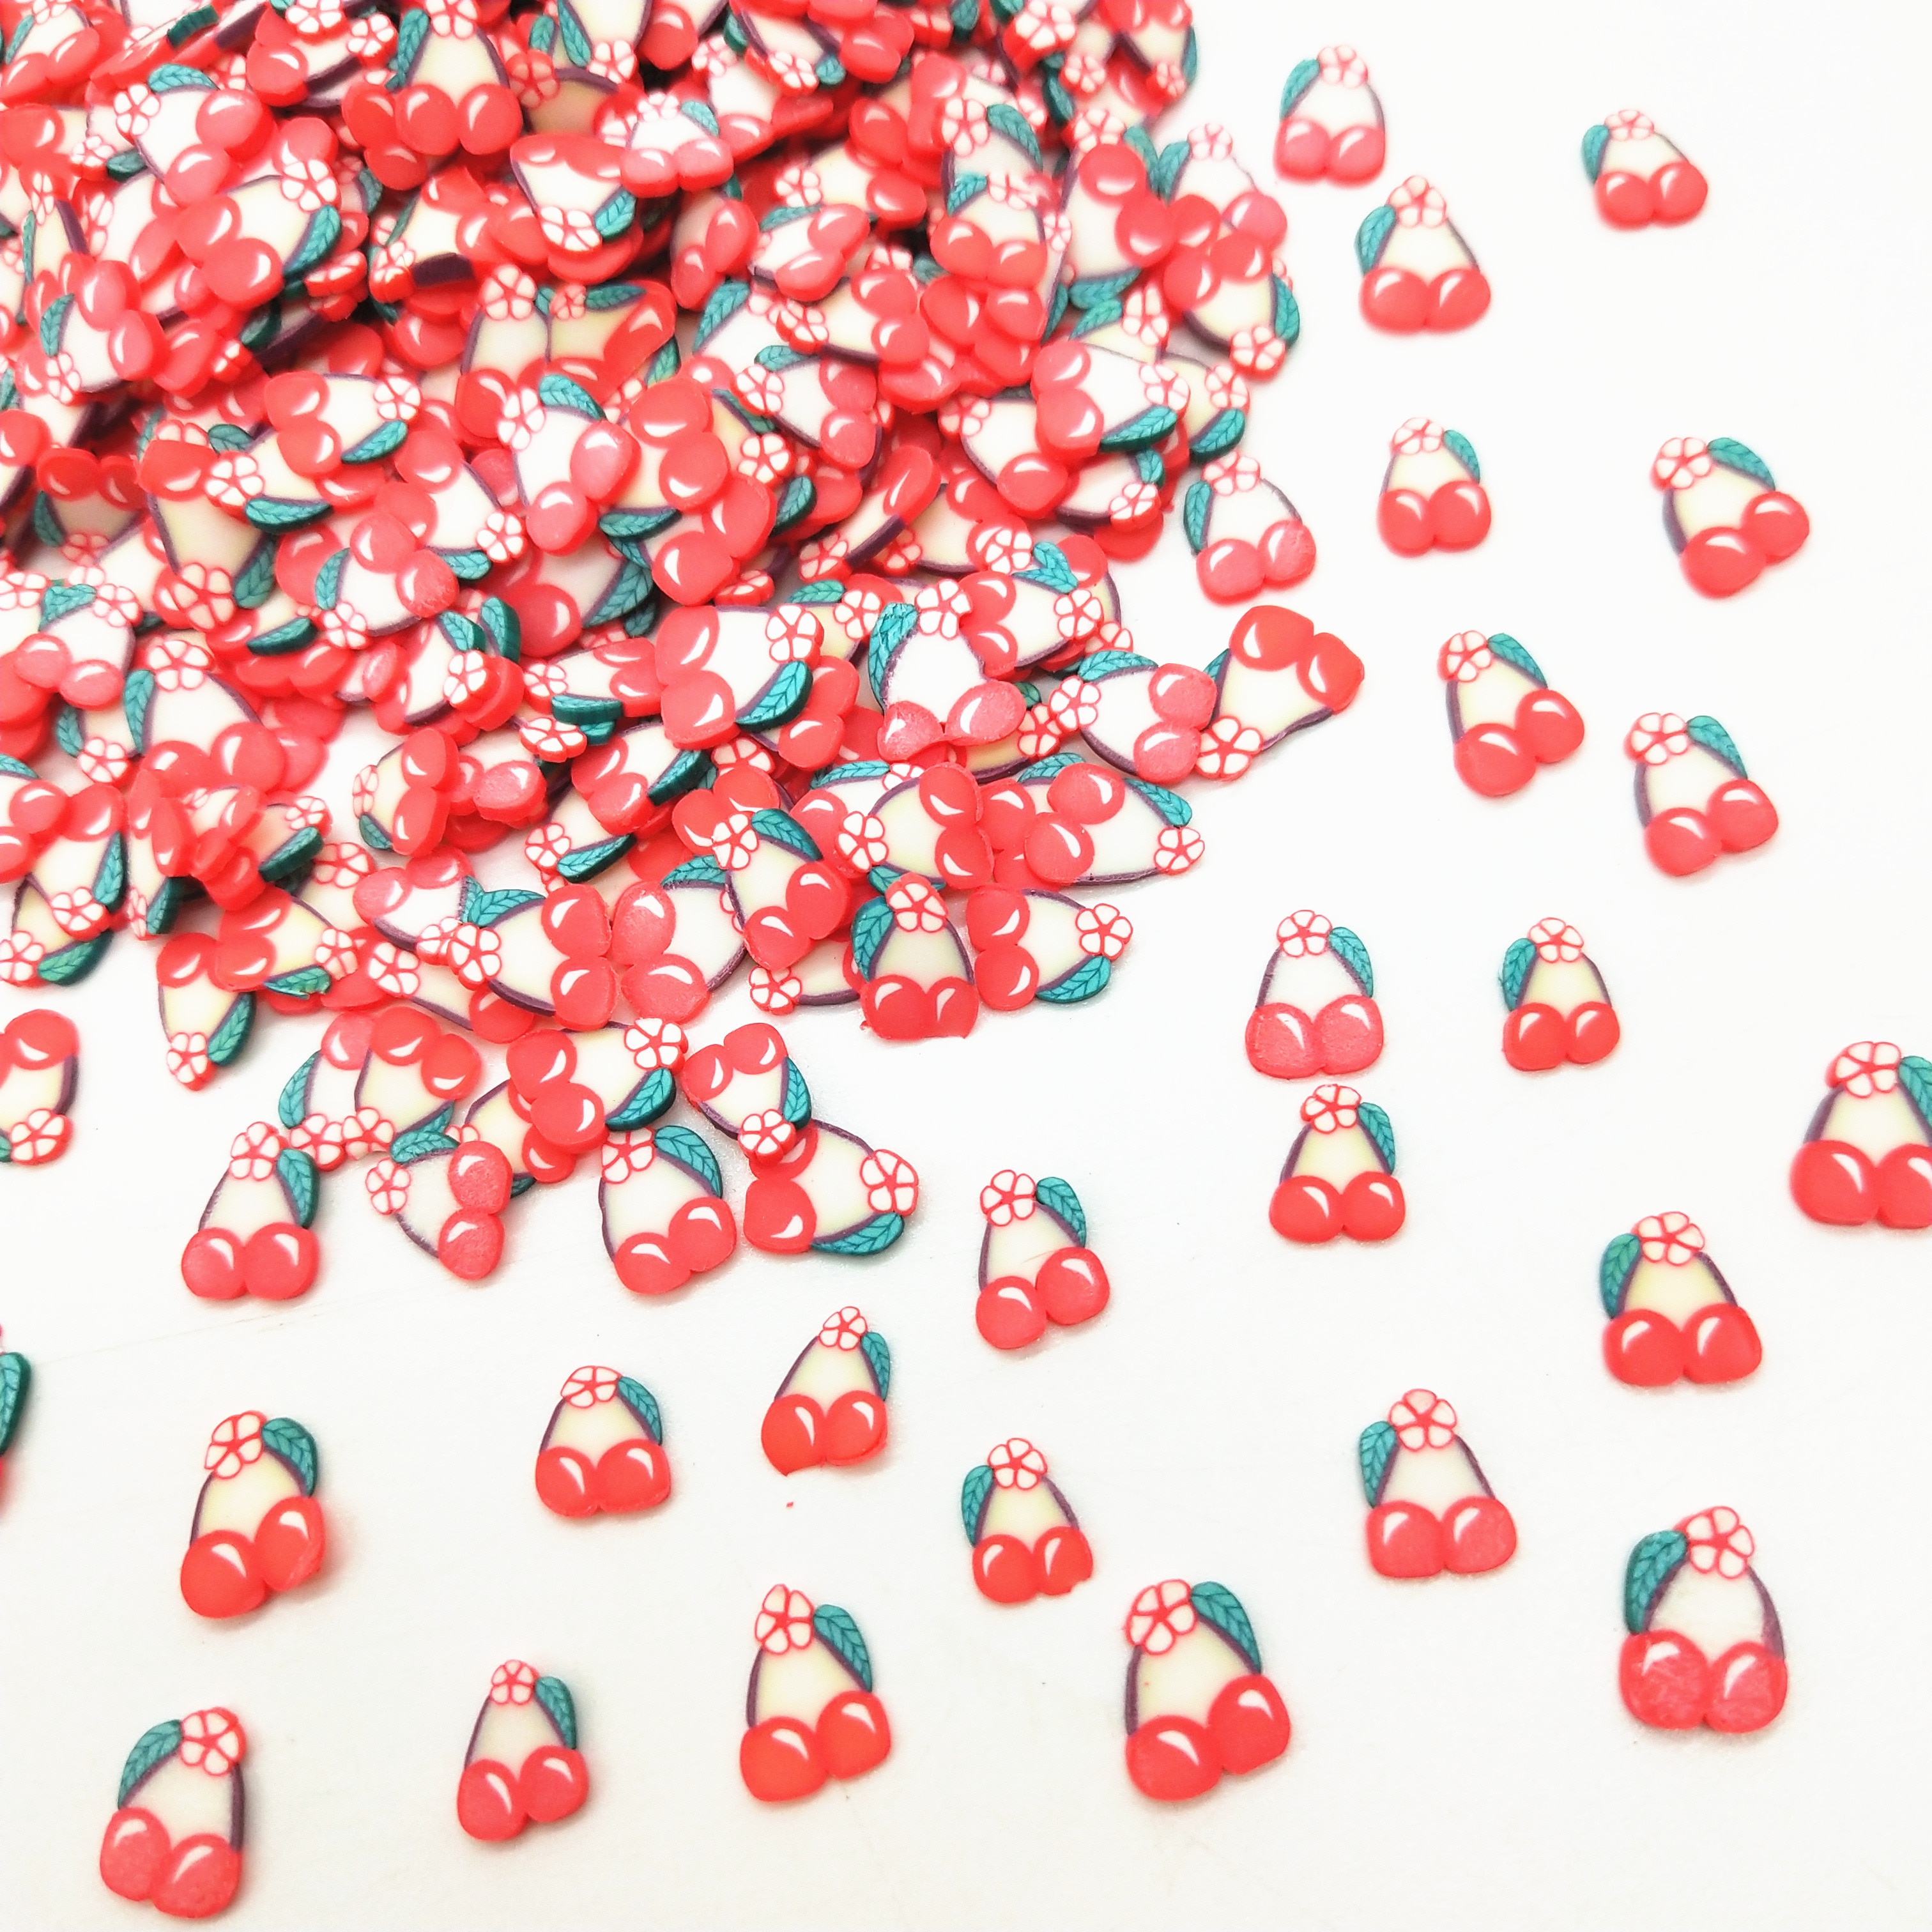 20 G/partij 5Mm Rode Kers Polymeer Klei Voor Diy Ambachten Plastic Klei Modder Deeltjes Fruit Kersen Klei